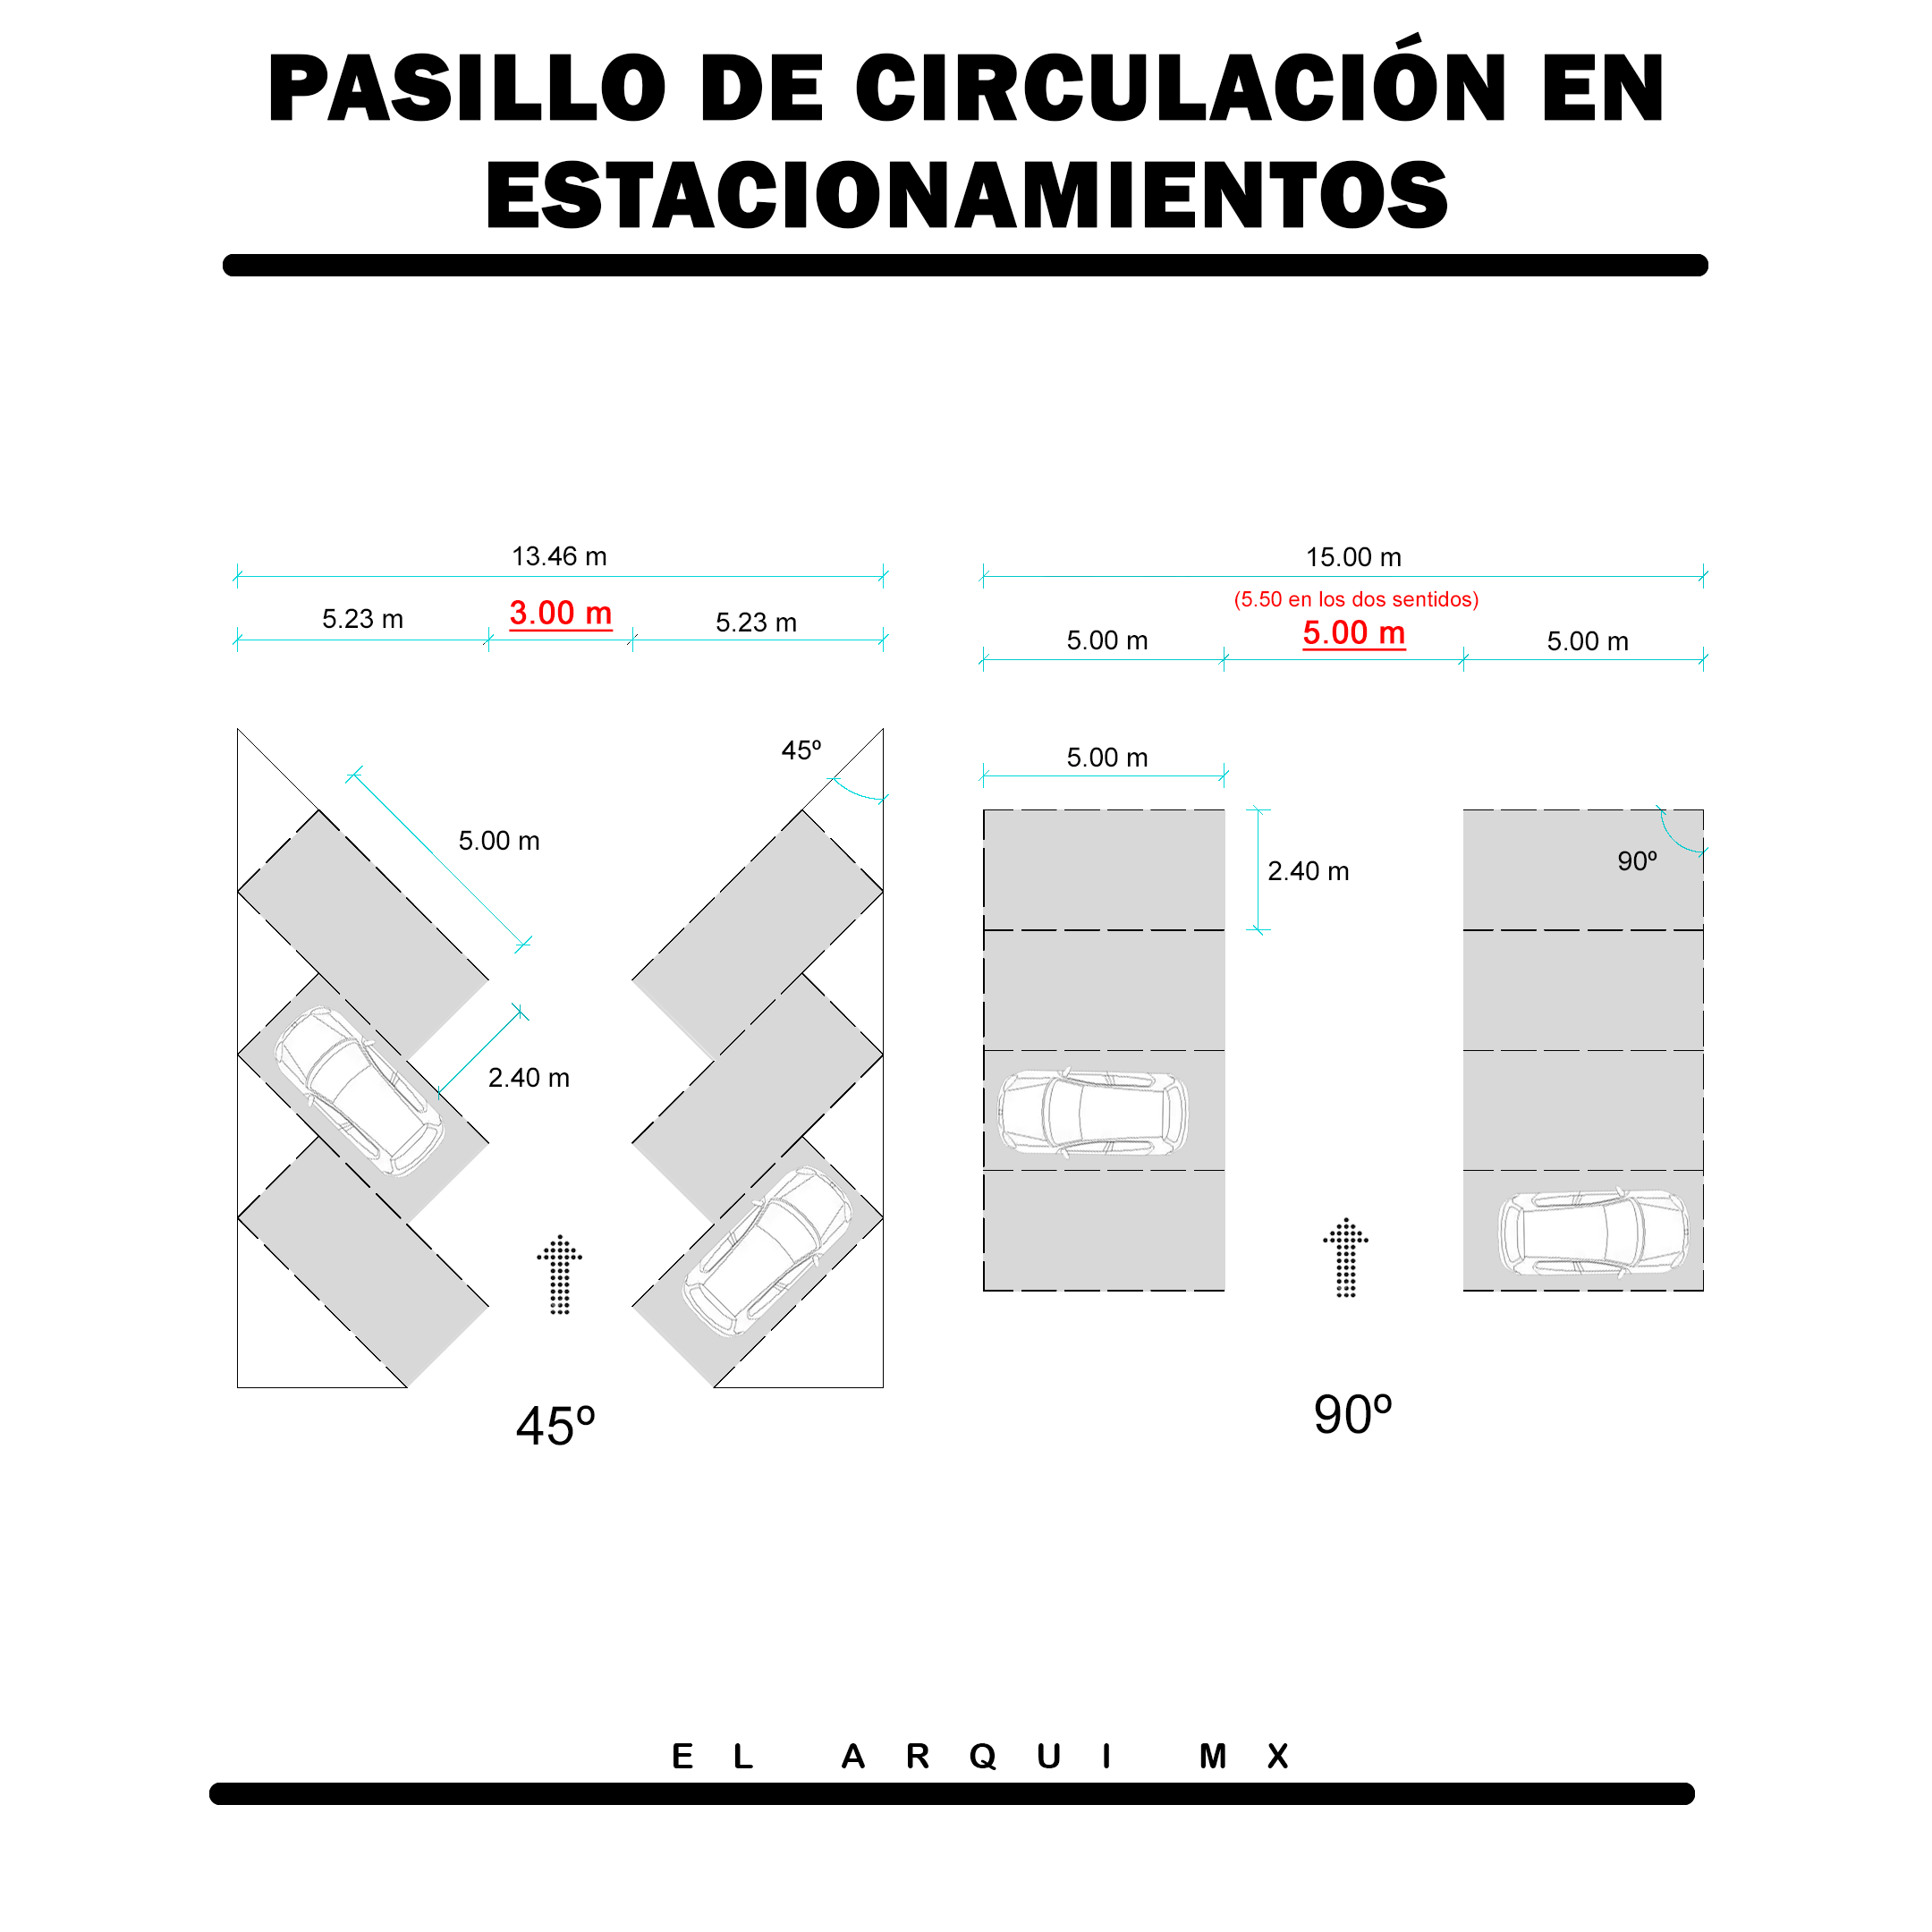 Dimensiones De Pasillos De Circulación En Estacionamientos 0517